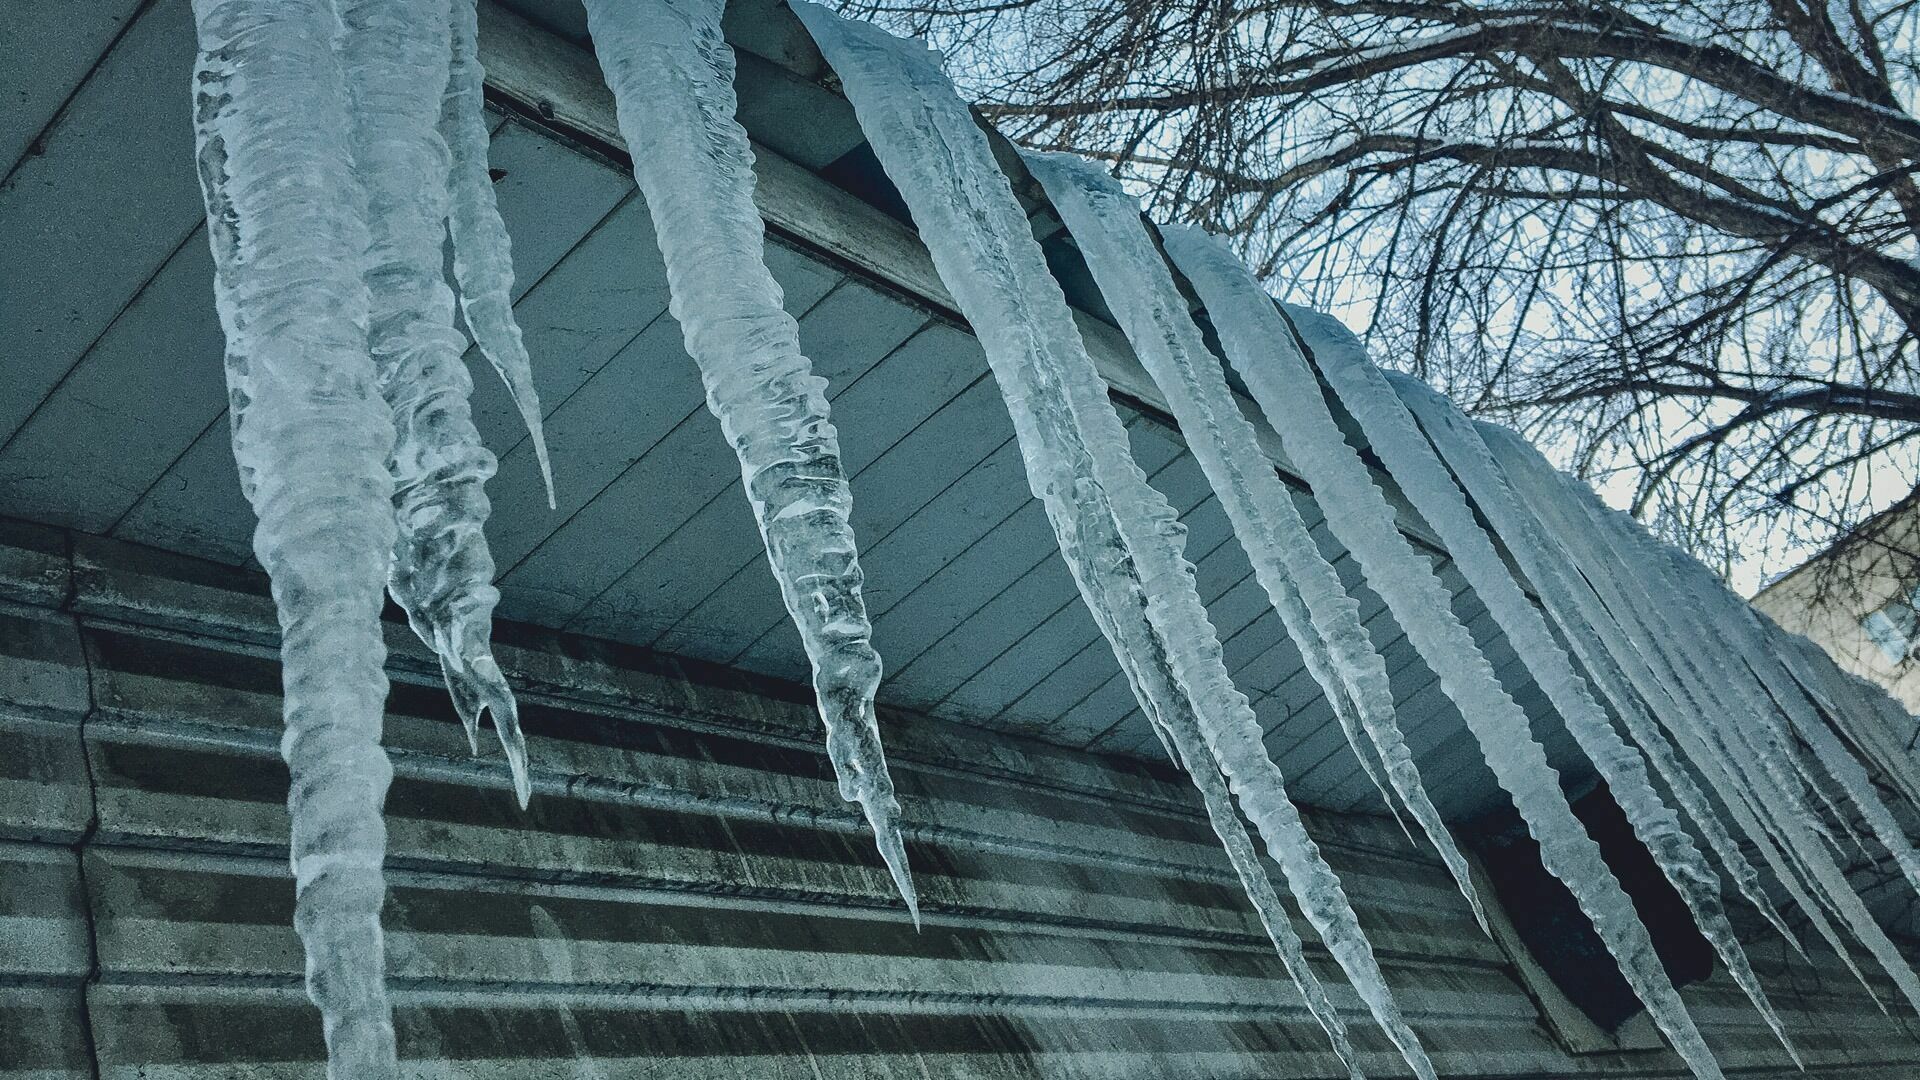 Береги голову: во Владивостоке с крыш домов падают глыбы снега и льда